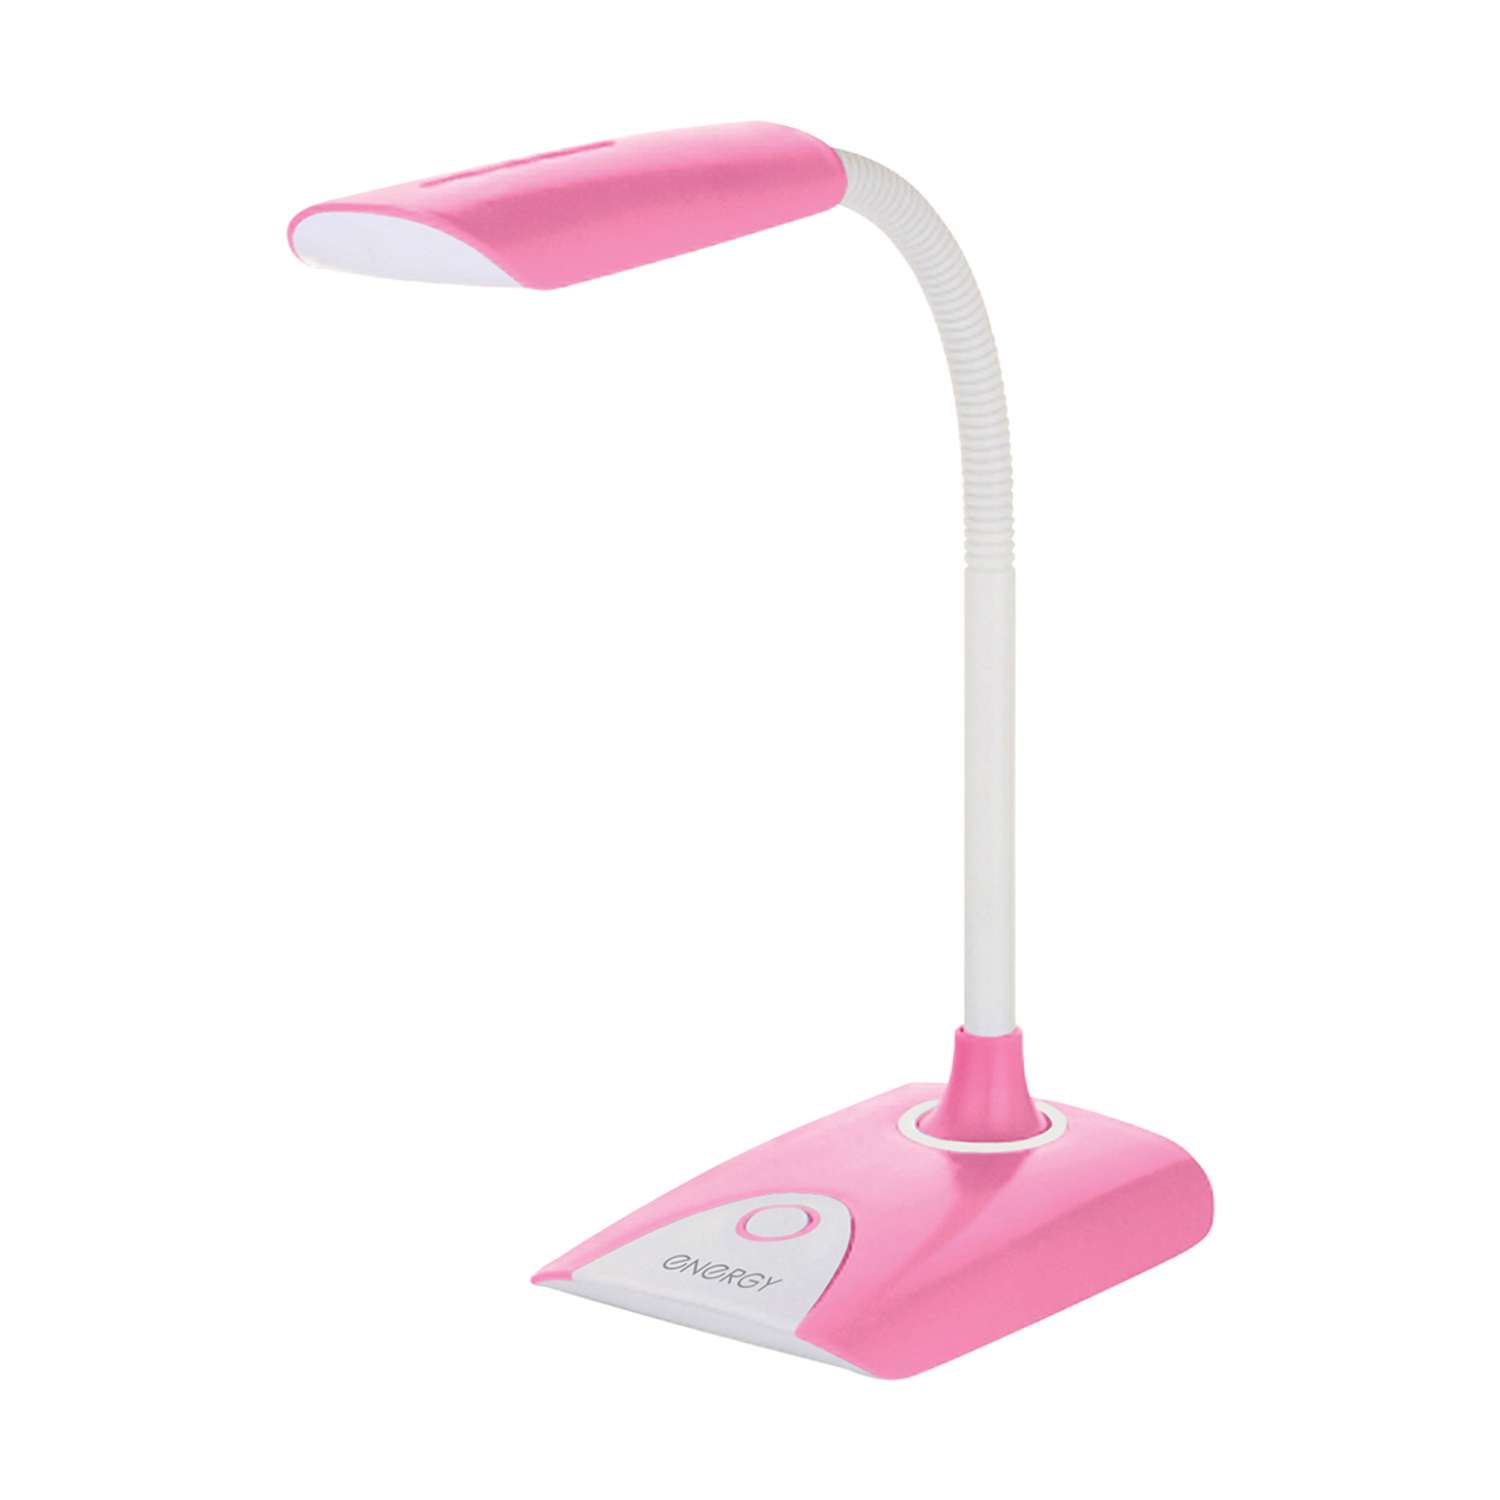 Лампа электрическая Energy настольная EN-LED22 бело-розовая - фото 1